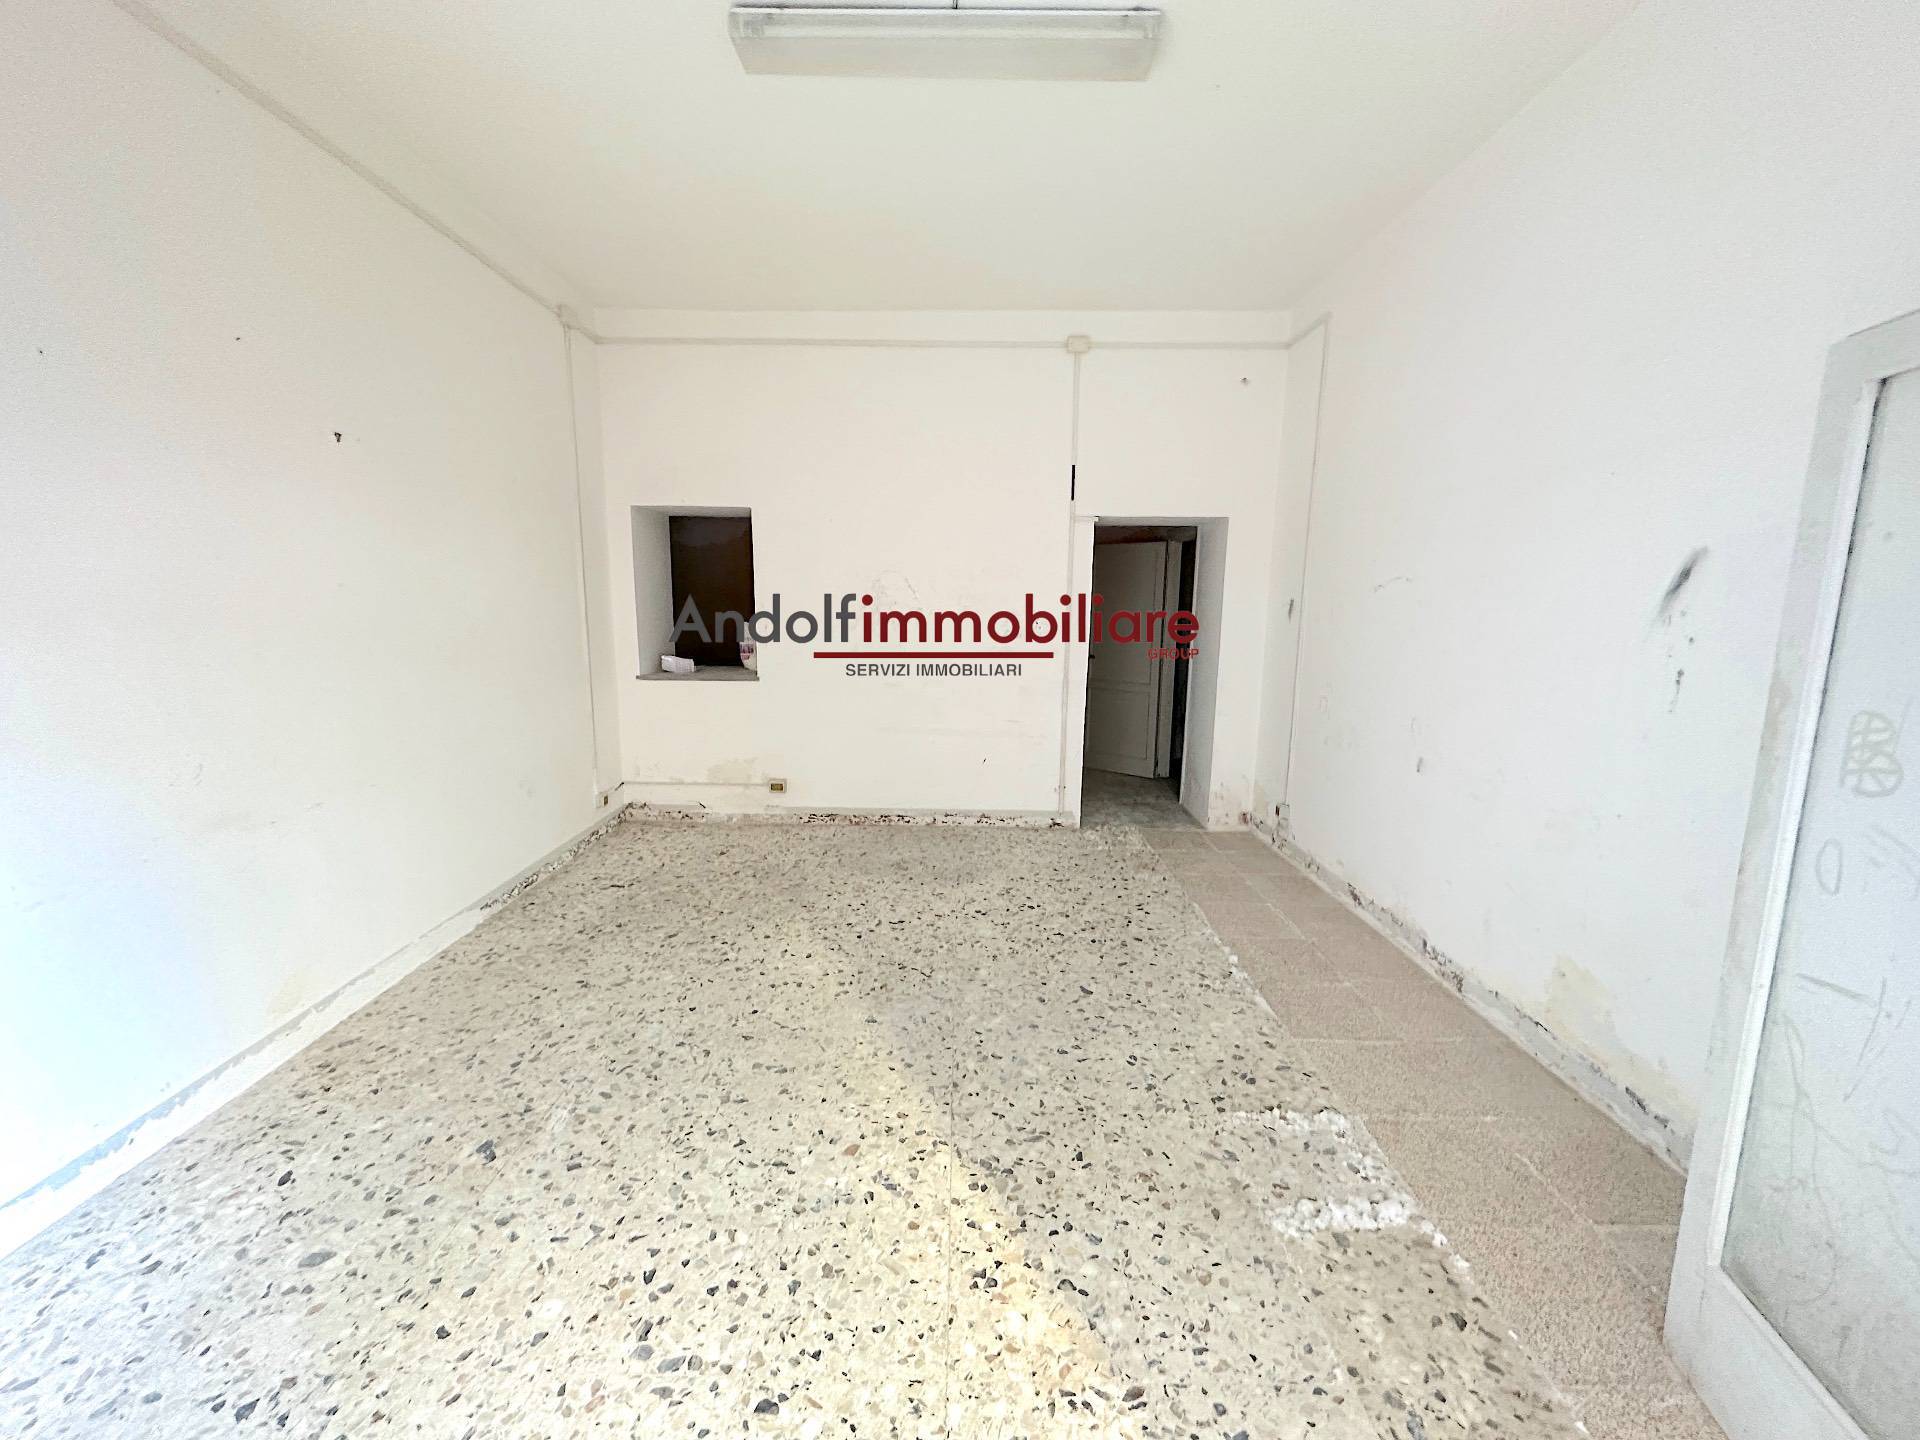 Negozio / Locale in vendita a Gaeta, 9999 locali, prezzo € 60.000 | CambioCasa.it